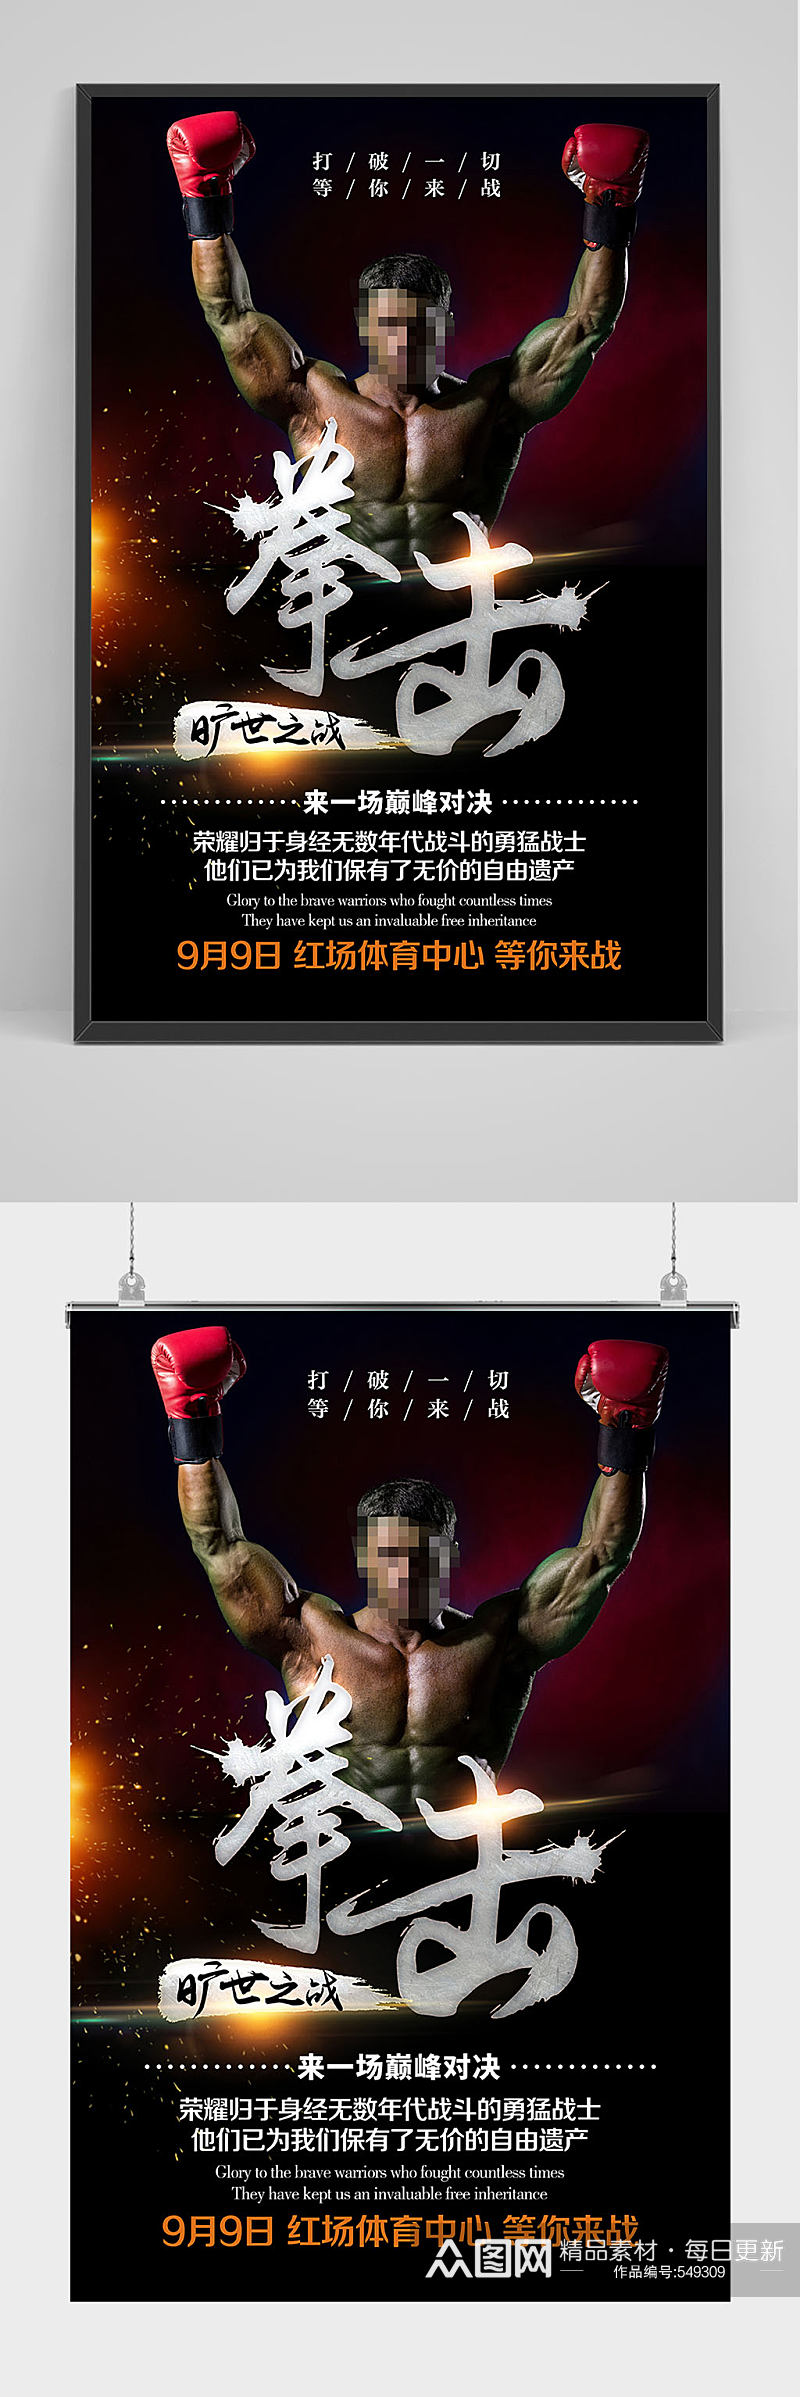 精品拳击比赛海报设计素材